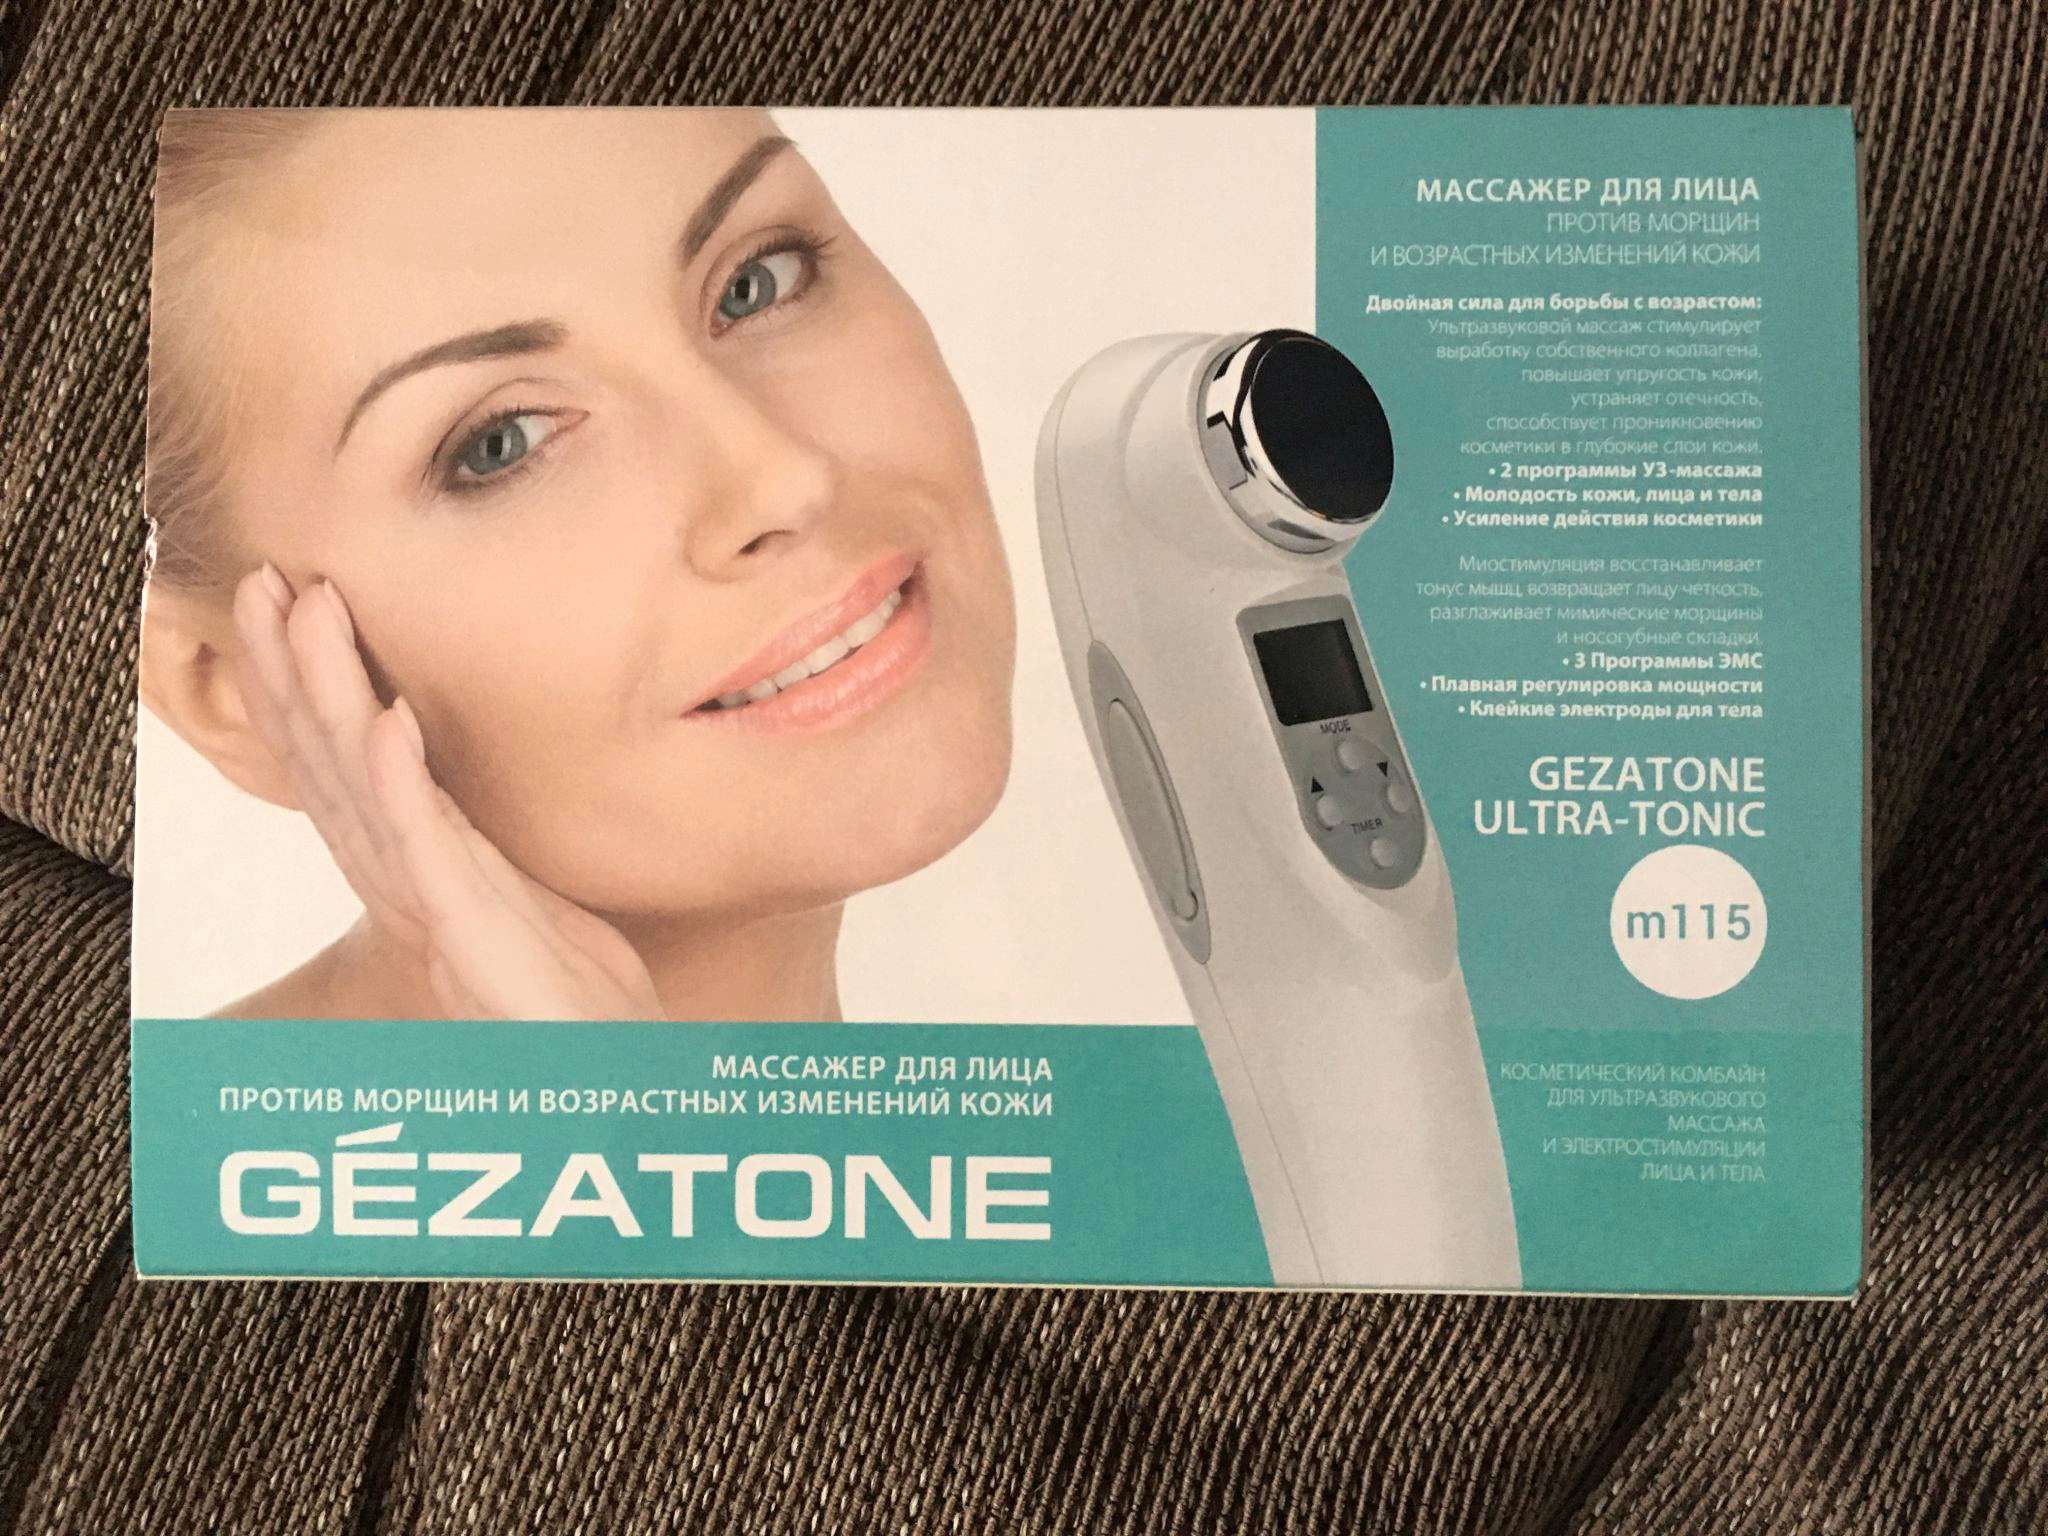 Аппарат для лица с микротоками домашнего использования. Gezatone Ultra-Tonic m115. Аппарат миостимуляция лица Gezatone m701. Жезатон массажер для лица и тела. Массажер для лица шеи и тела ультразвук миостимуляция m115 Gezatone.